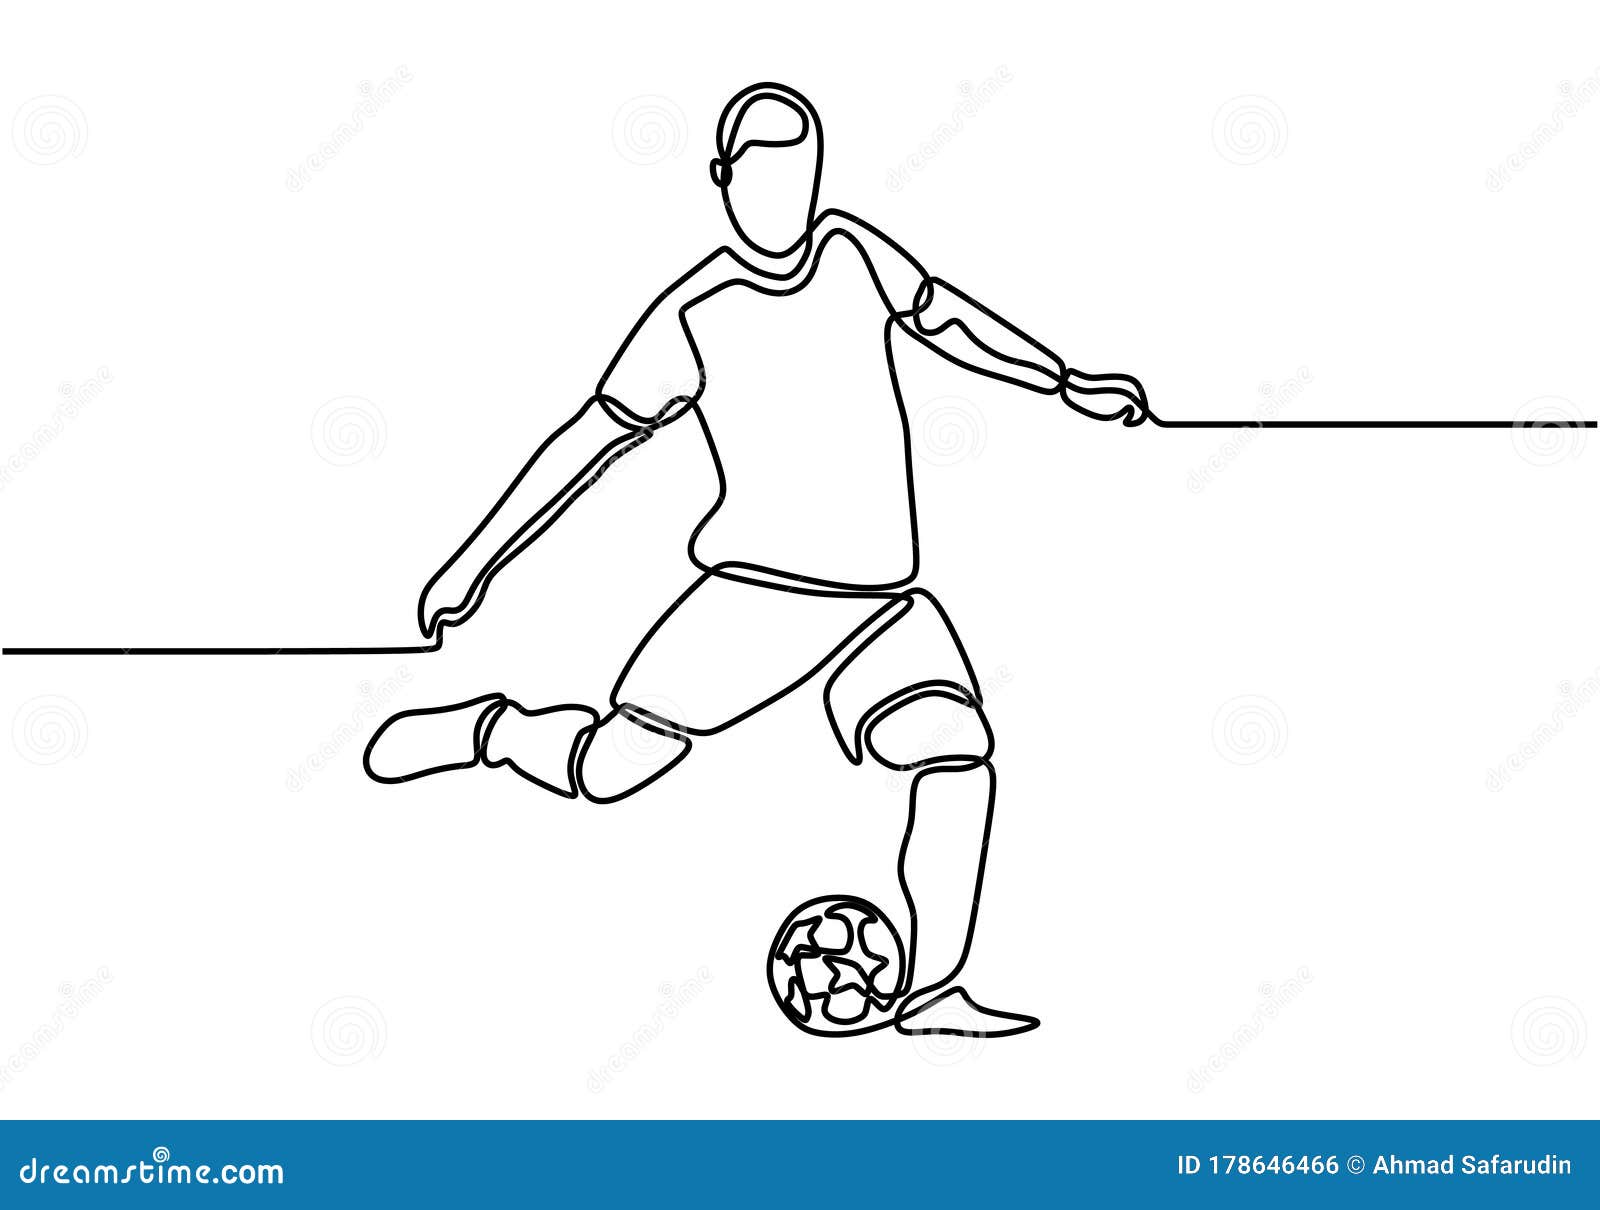 uma única linha contínua desenhando uma bola de futebol e uma taça